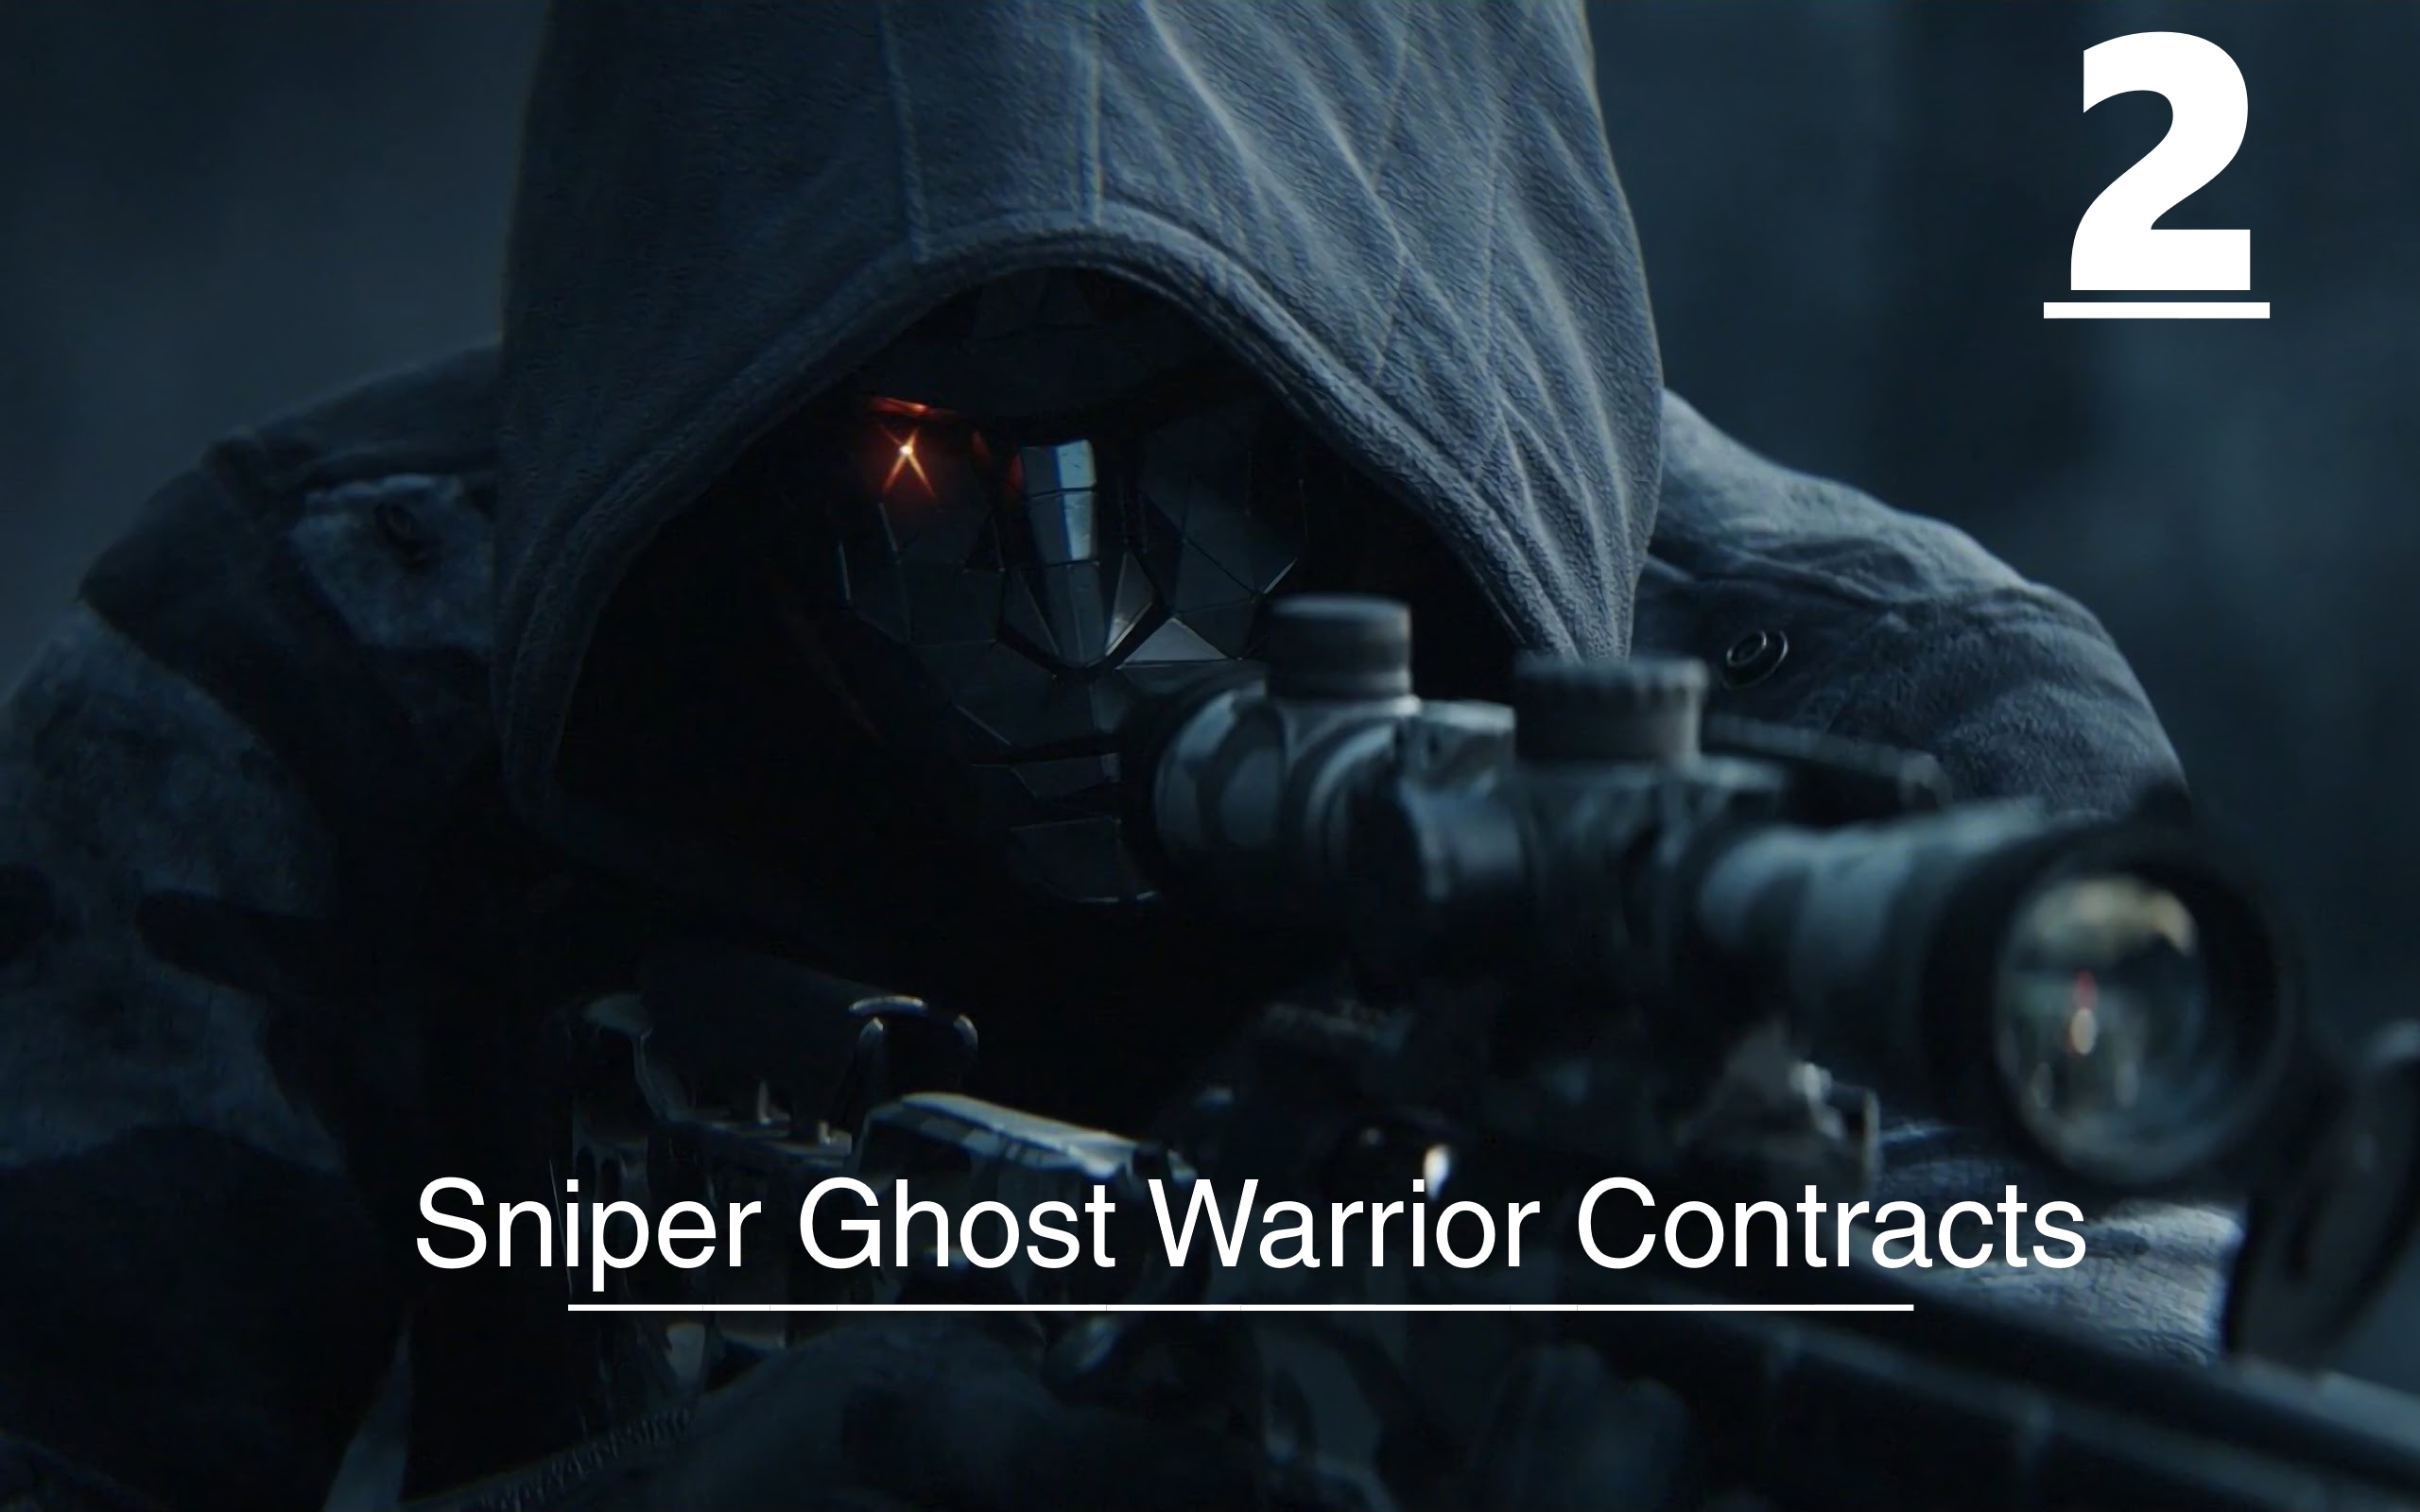 ▄︻デ══━一?[Sniper Ghost Warrior Contracts] Получить Образцы Вирусов но без Ивановского.Тс!!Тихо #2